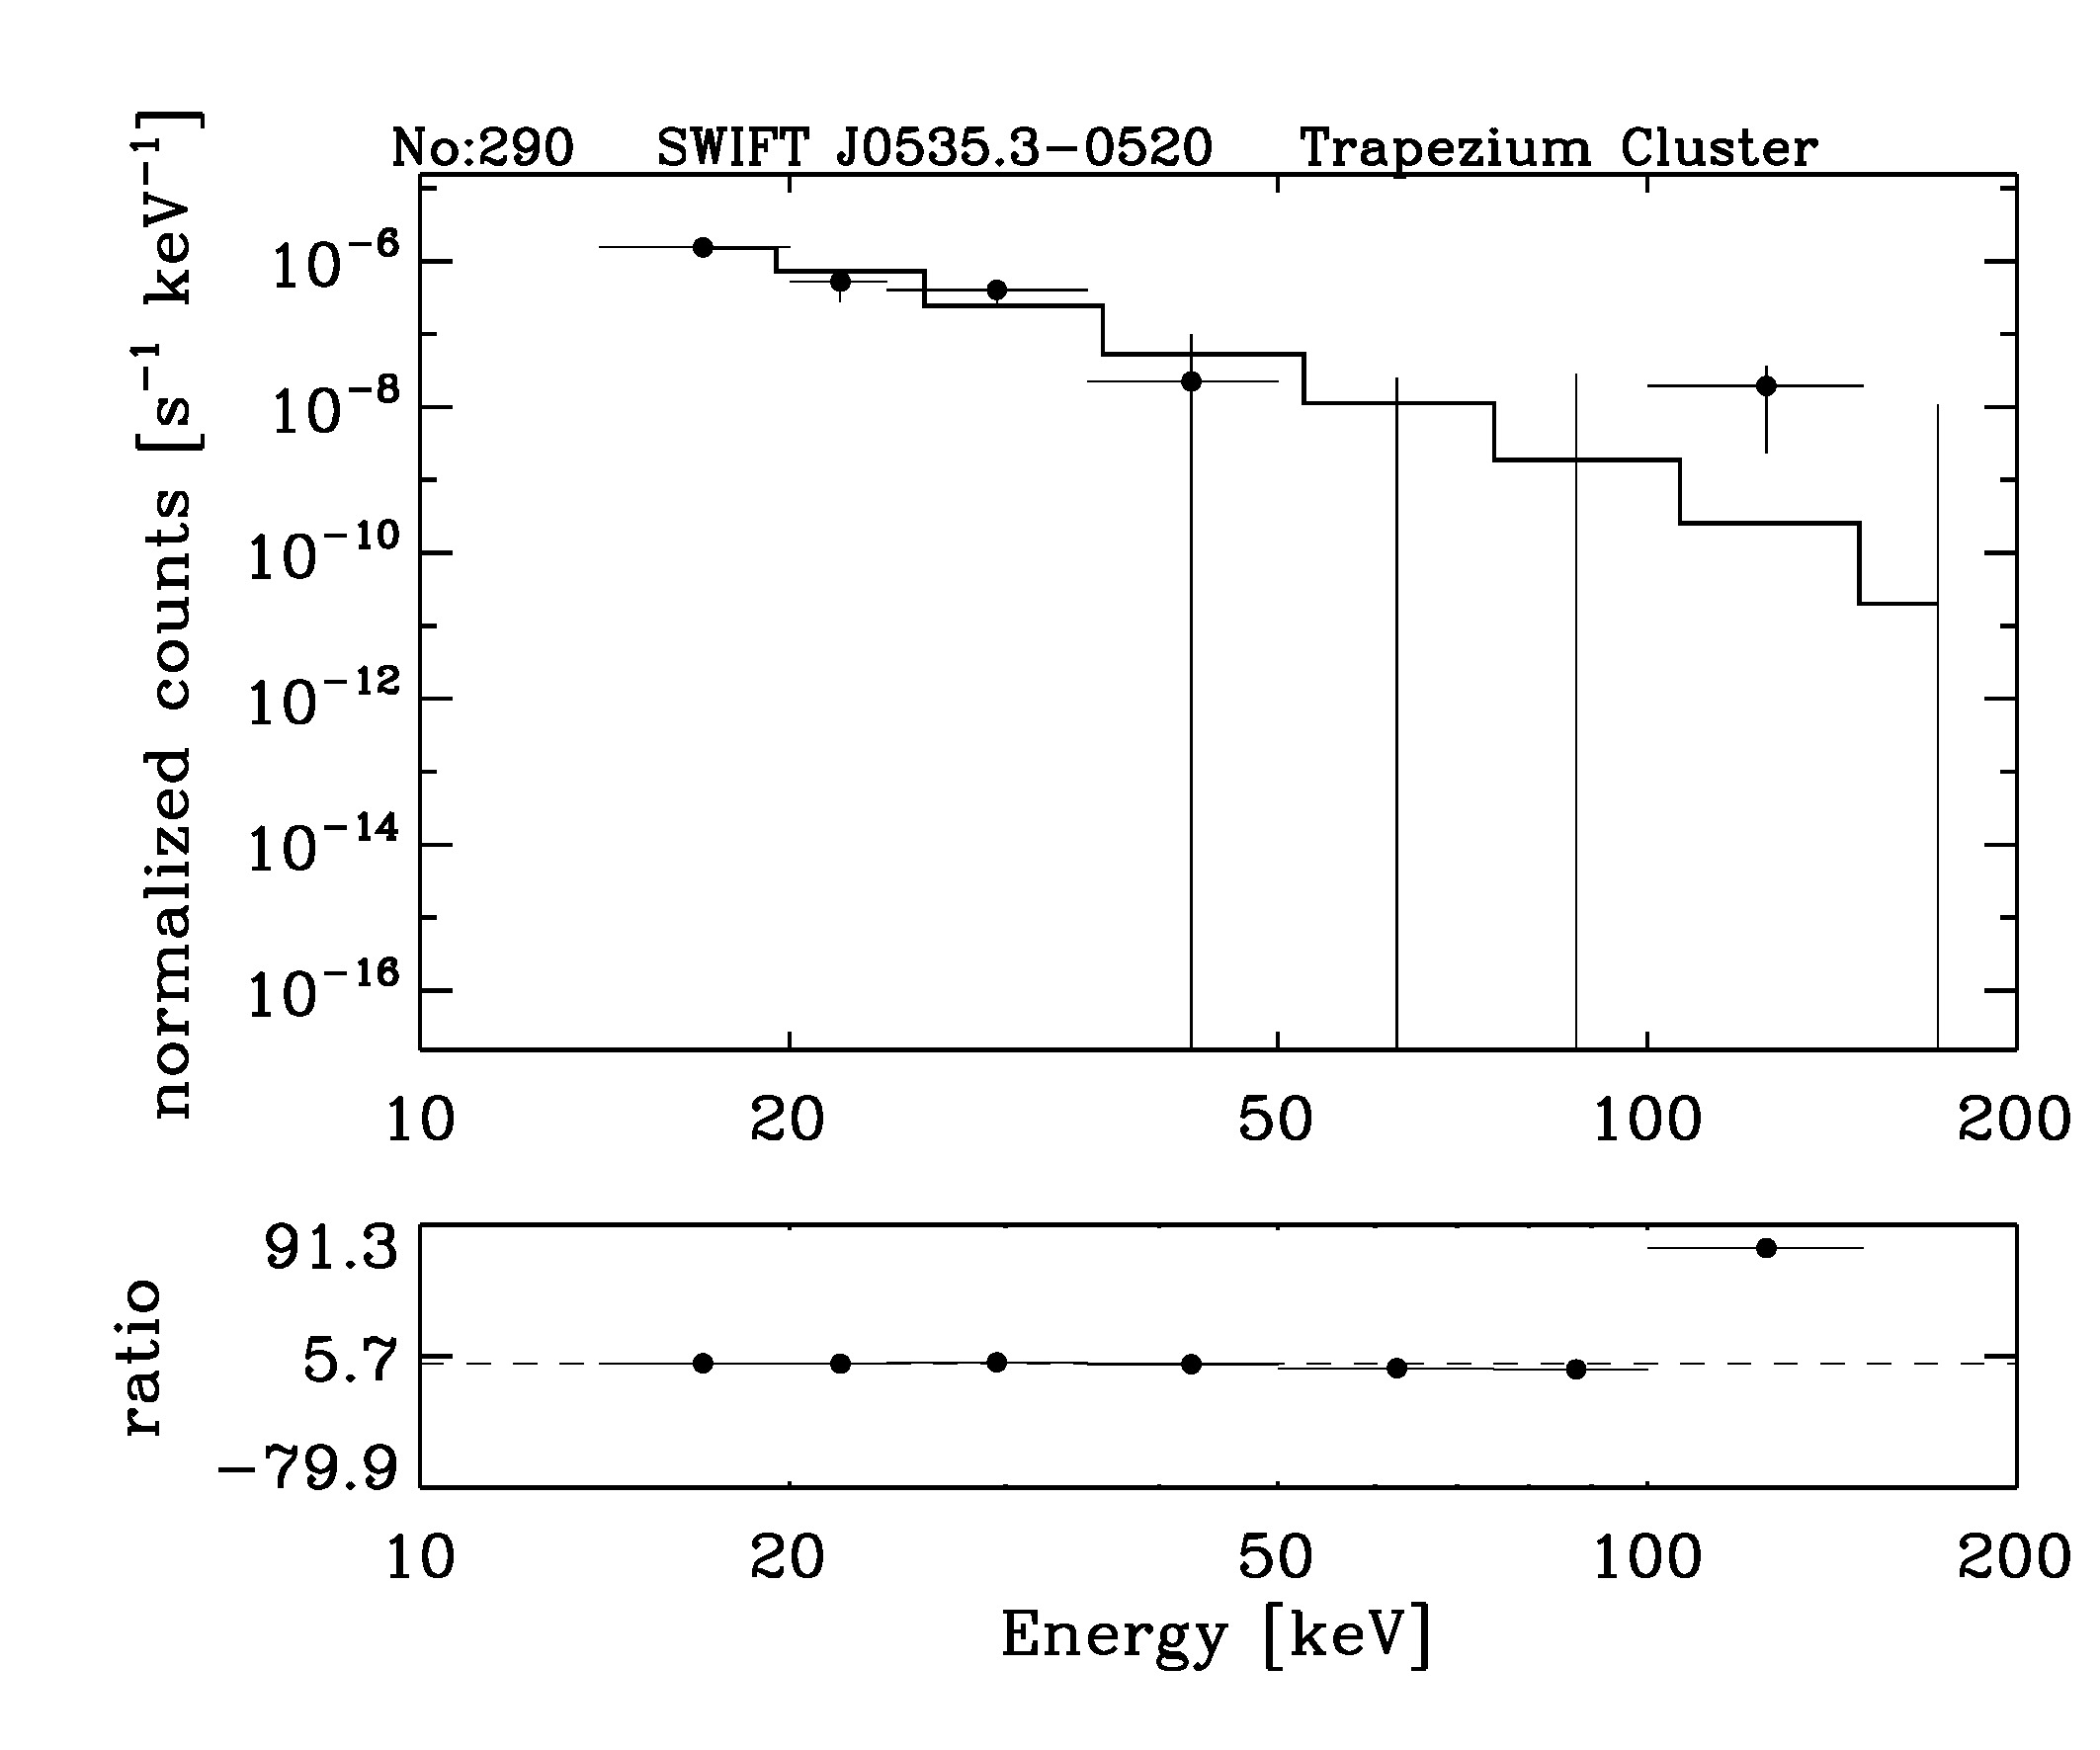 BAT Spectrum for SWIFT J0535.3-0520